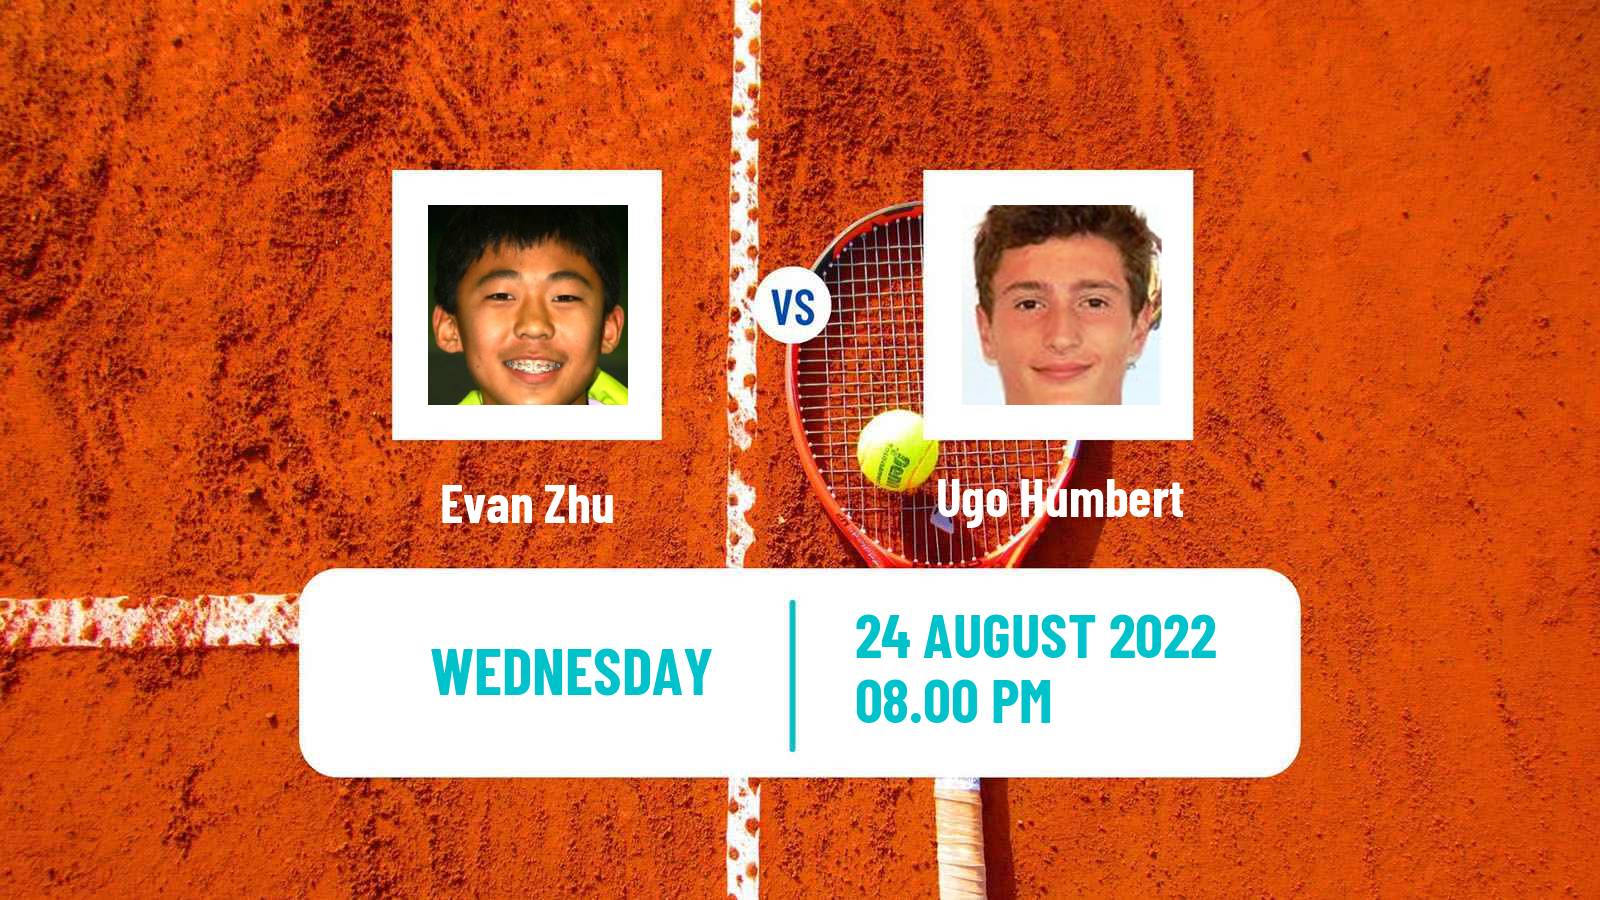 Tennis ATP Challenger Evan Zhu - Ugo Humbert